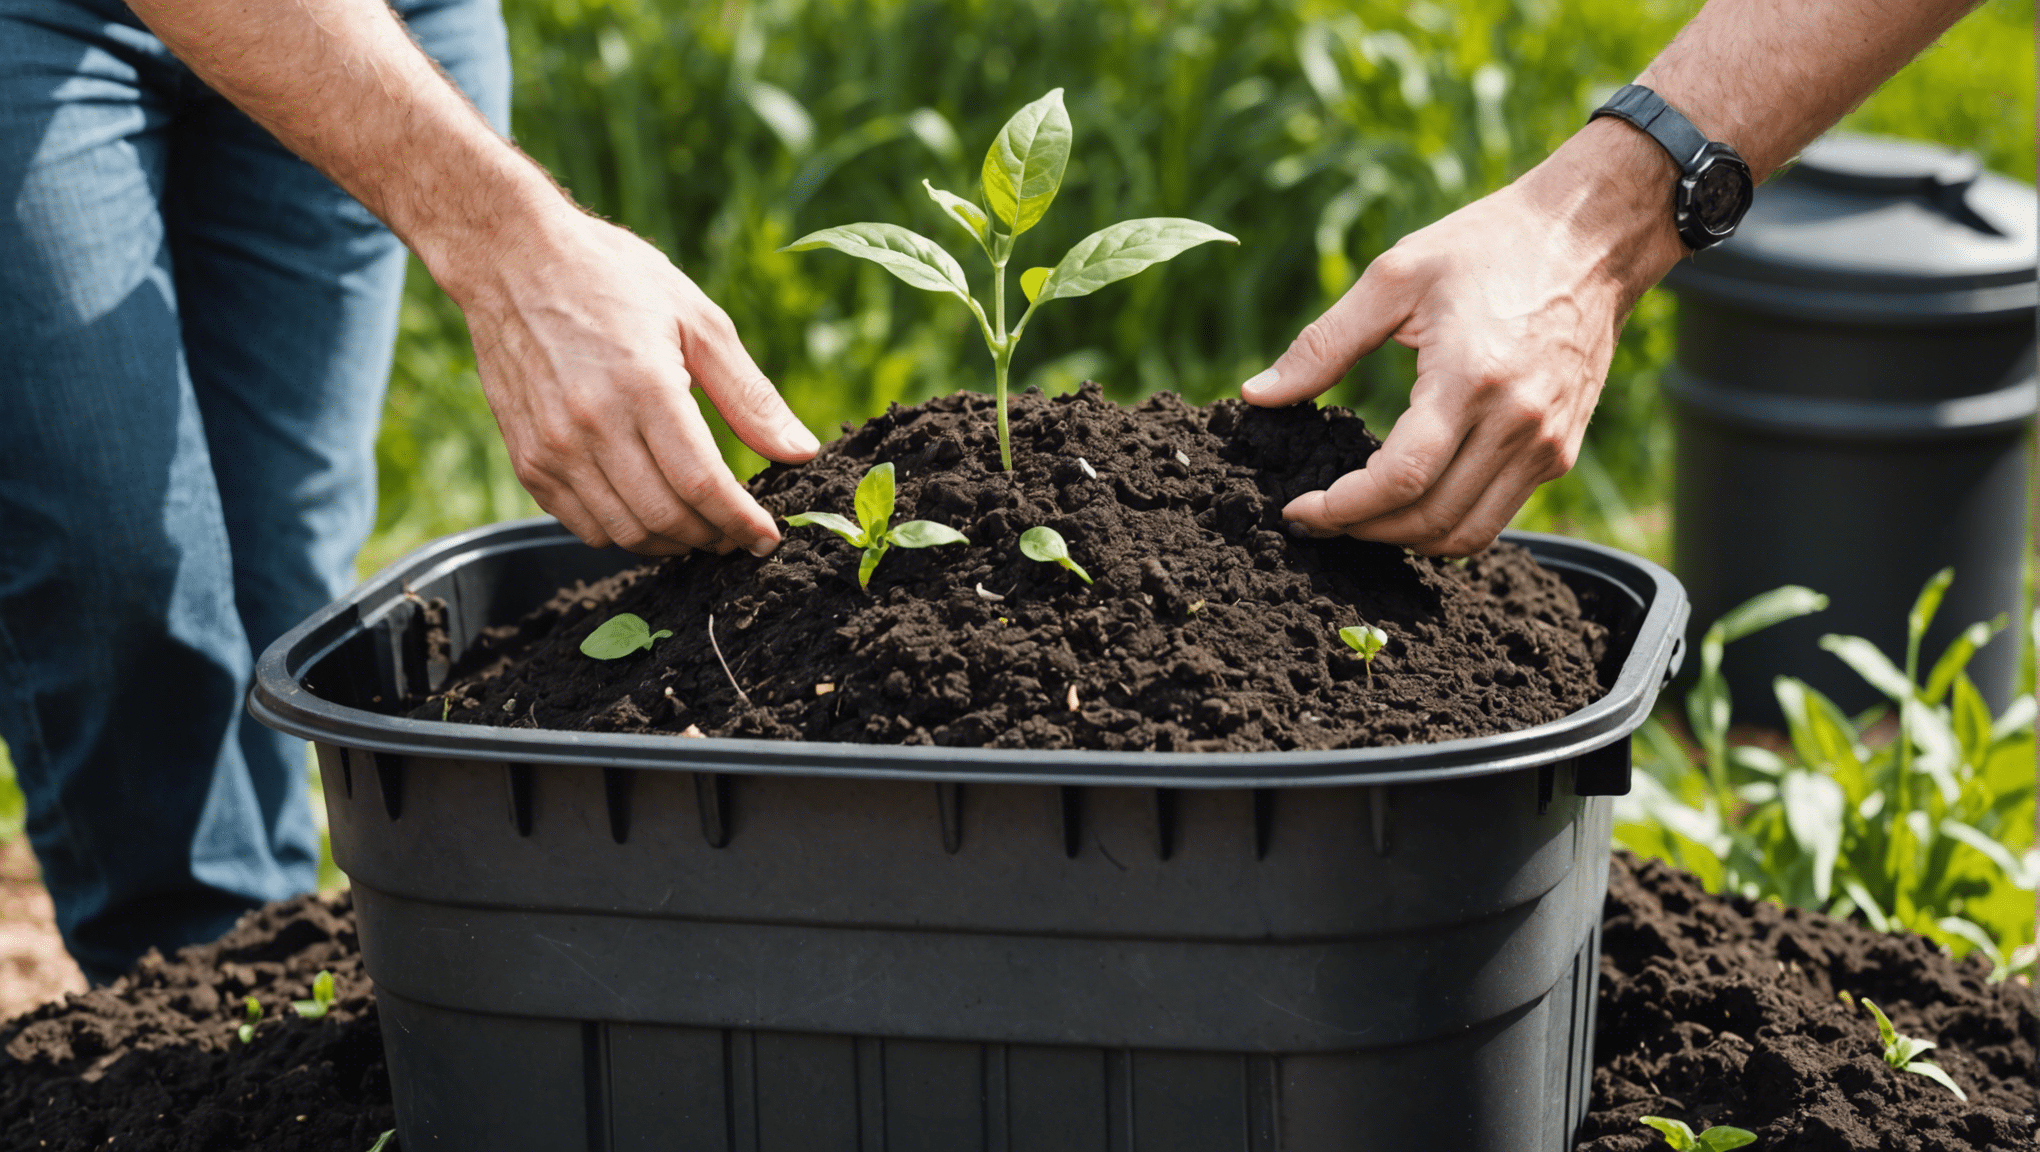 découvrez comment améliorer vos techniques de compostage pour un jardin plus sain et respectueux de l'environnement.